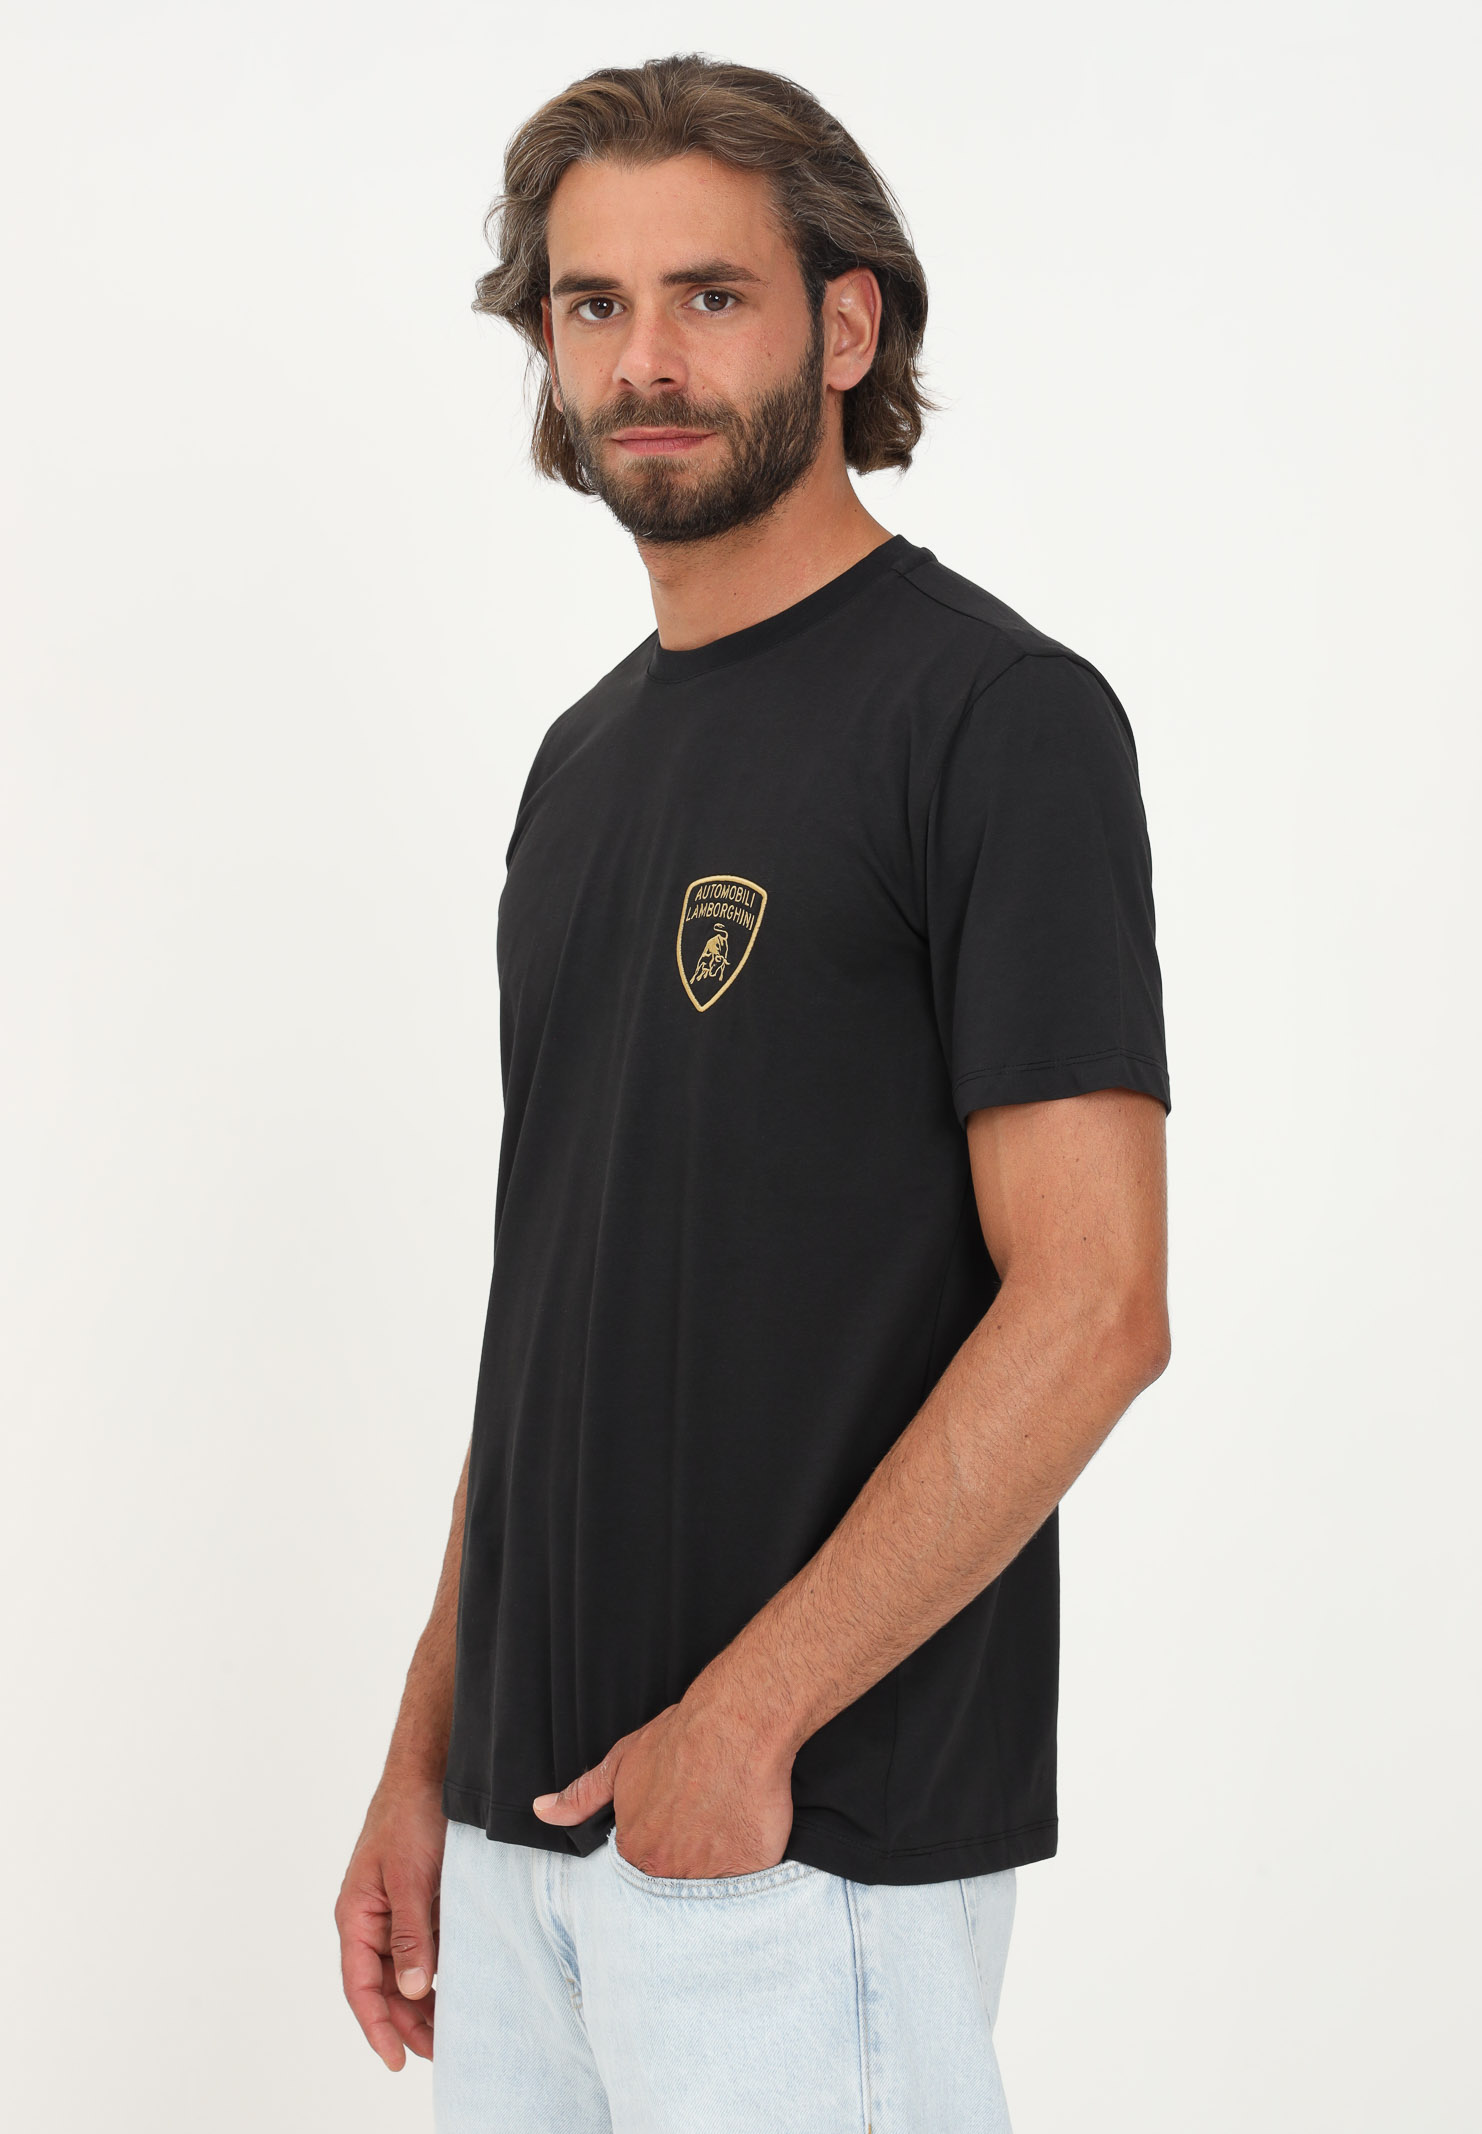 T-shirt Lamborghini nero uomo casual manica corta con logo scudo